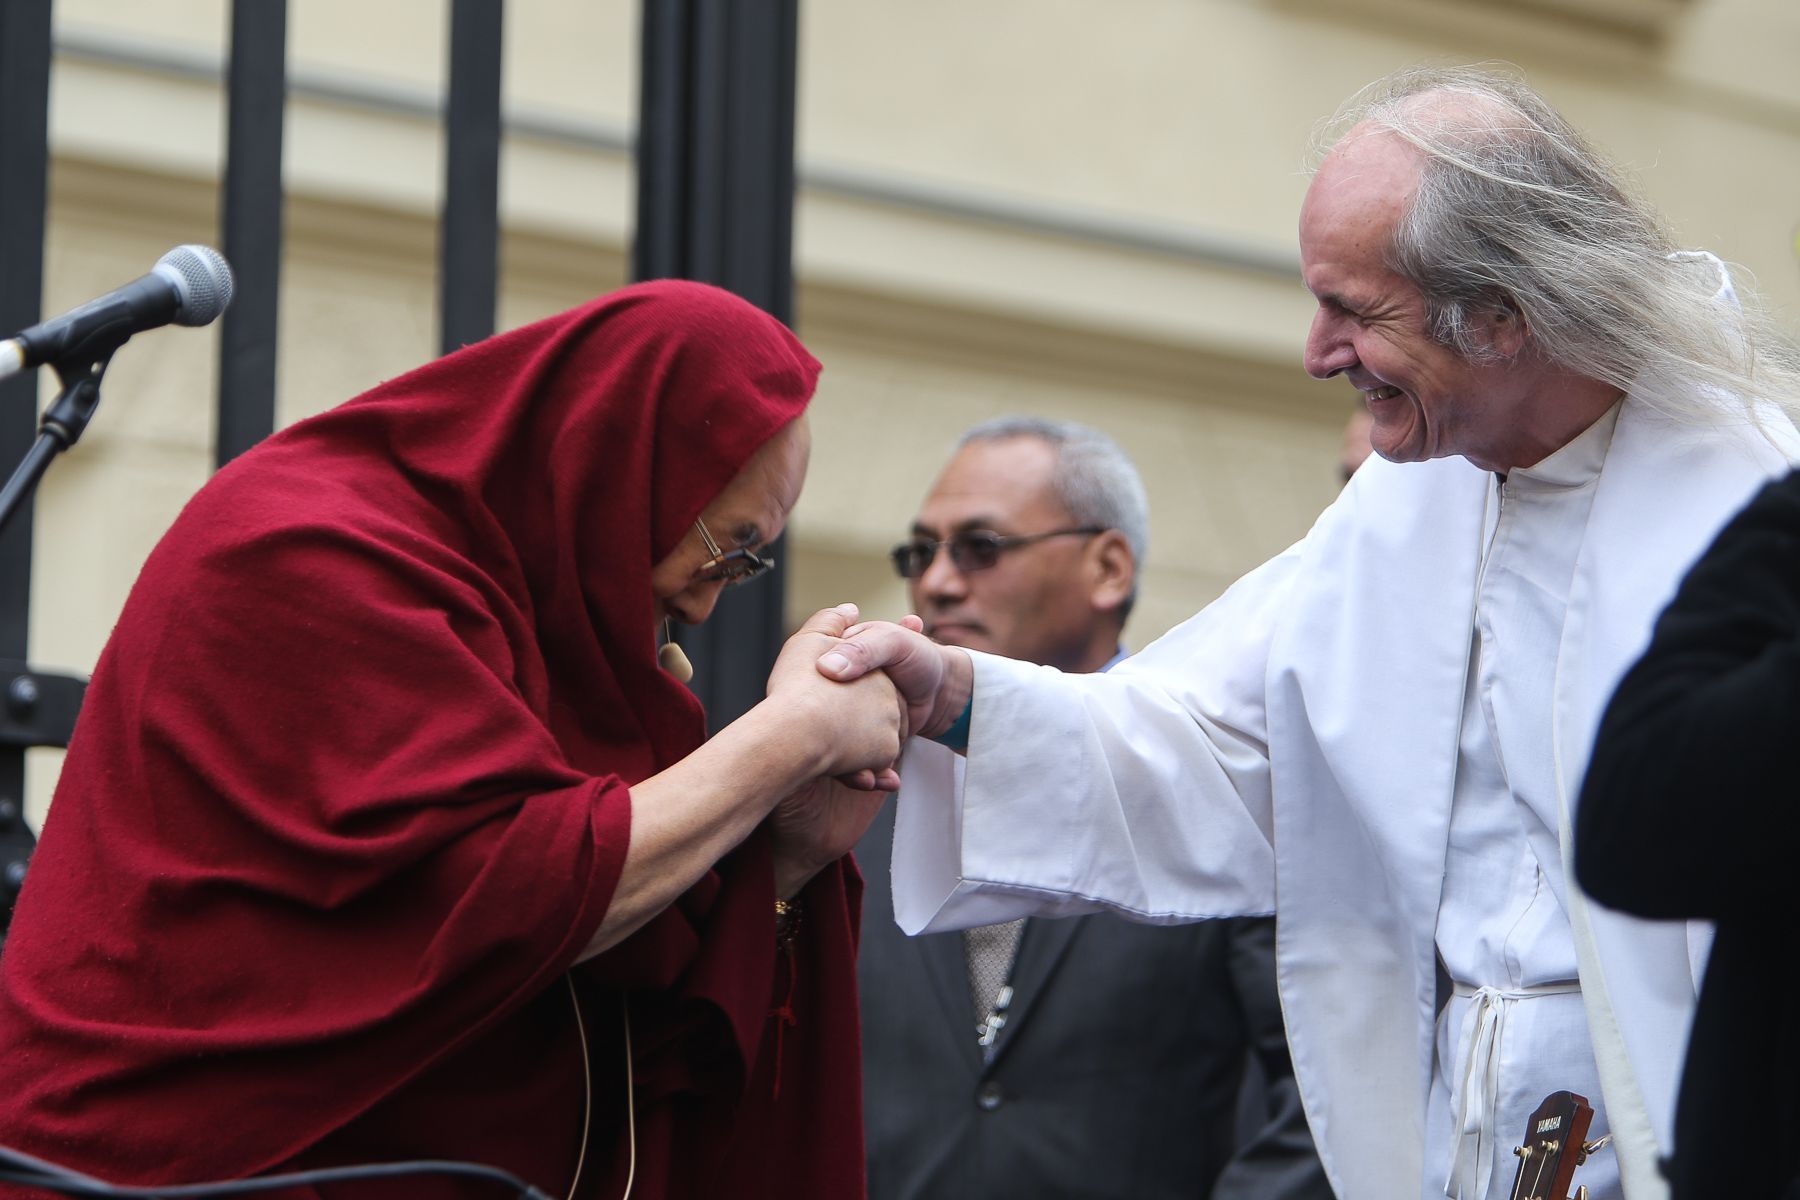 Dalajlama v Praze - přivítání na Hradčanském náměstí